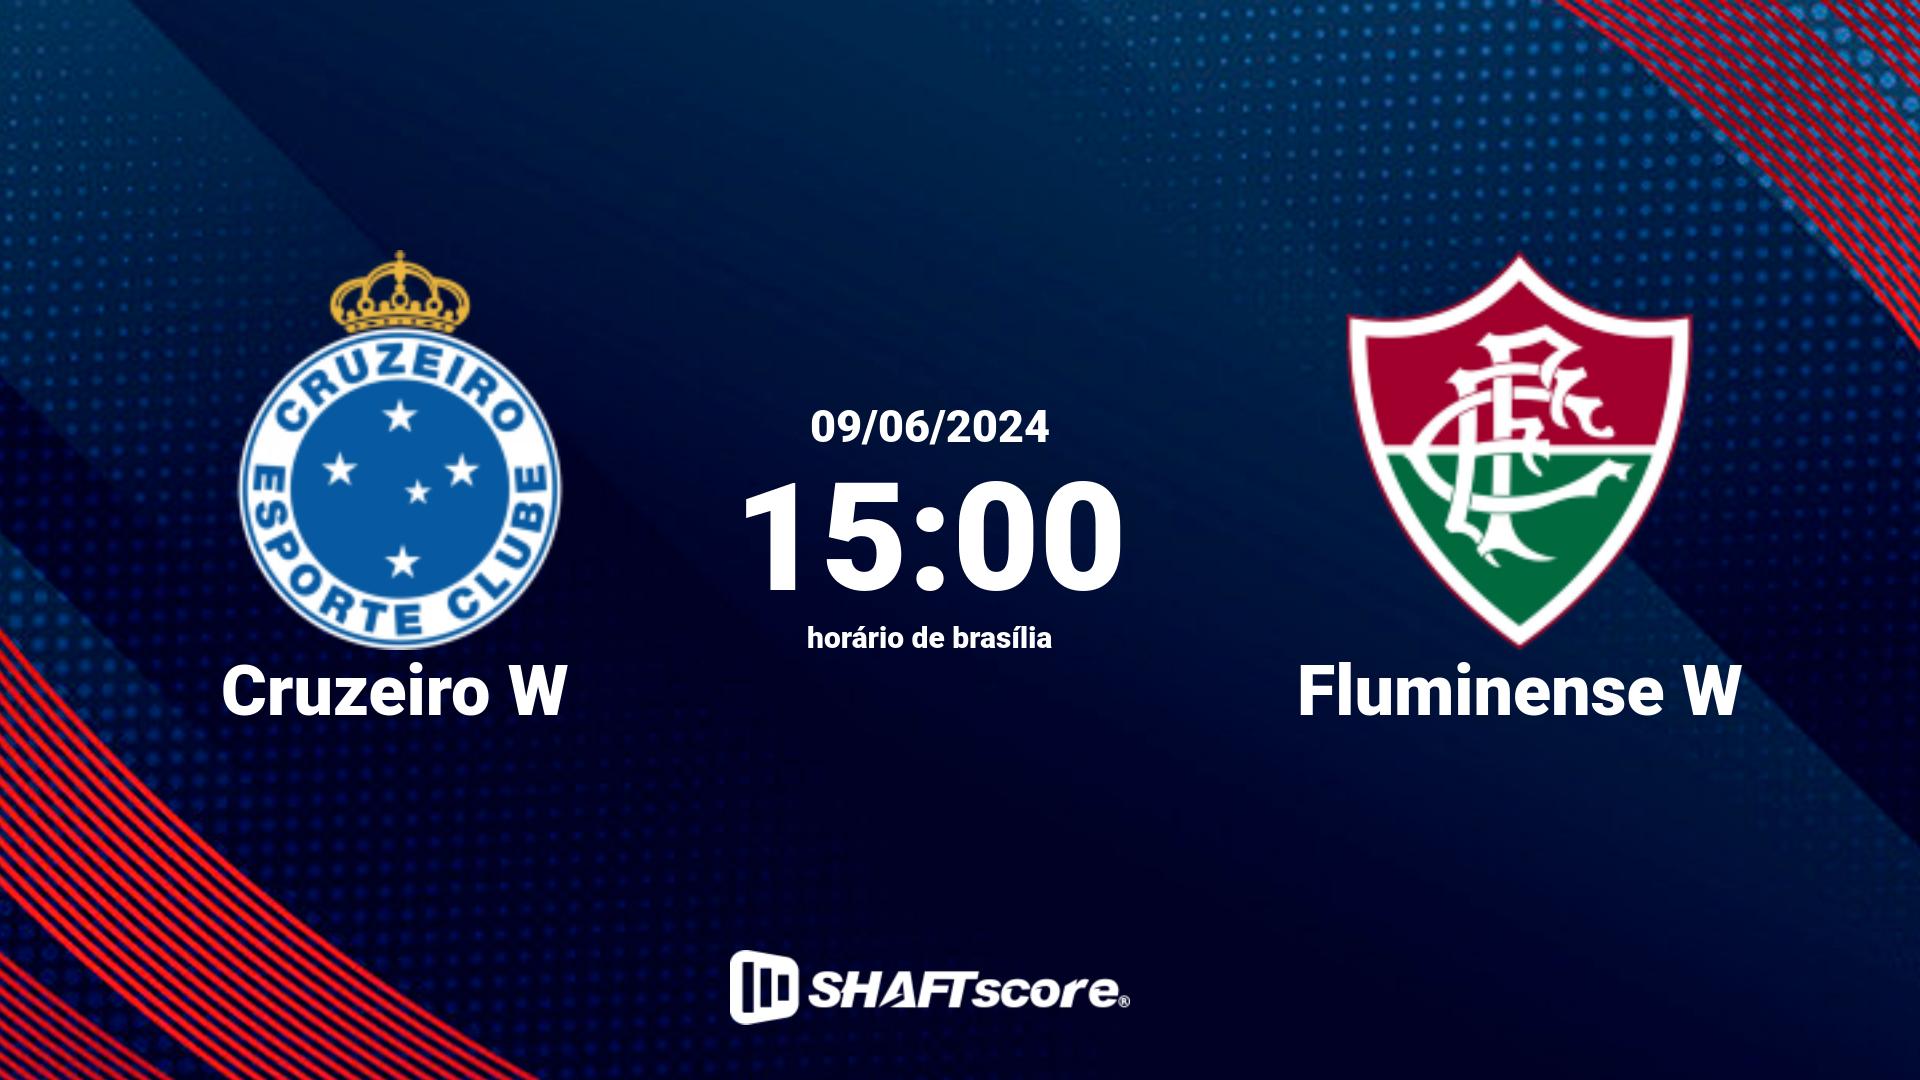 Estatísticas do jogo Cruzeiro W vs Fluminense W 08.06 19:00